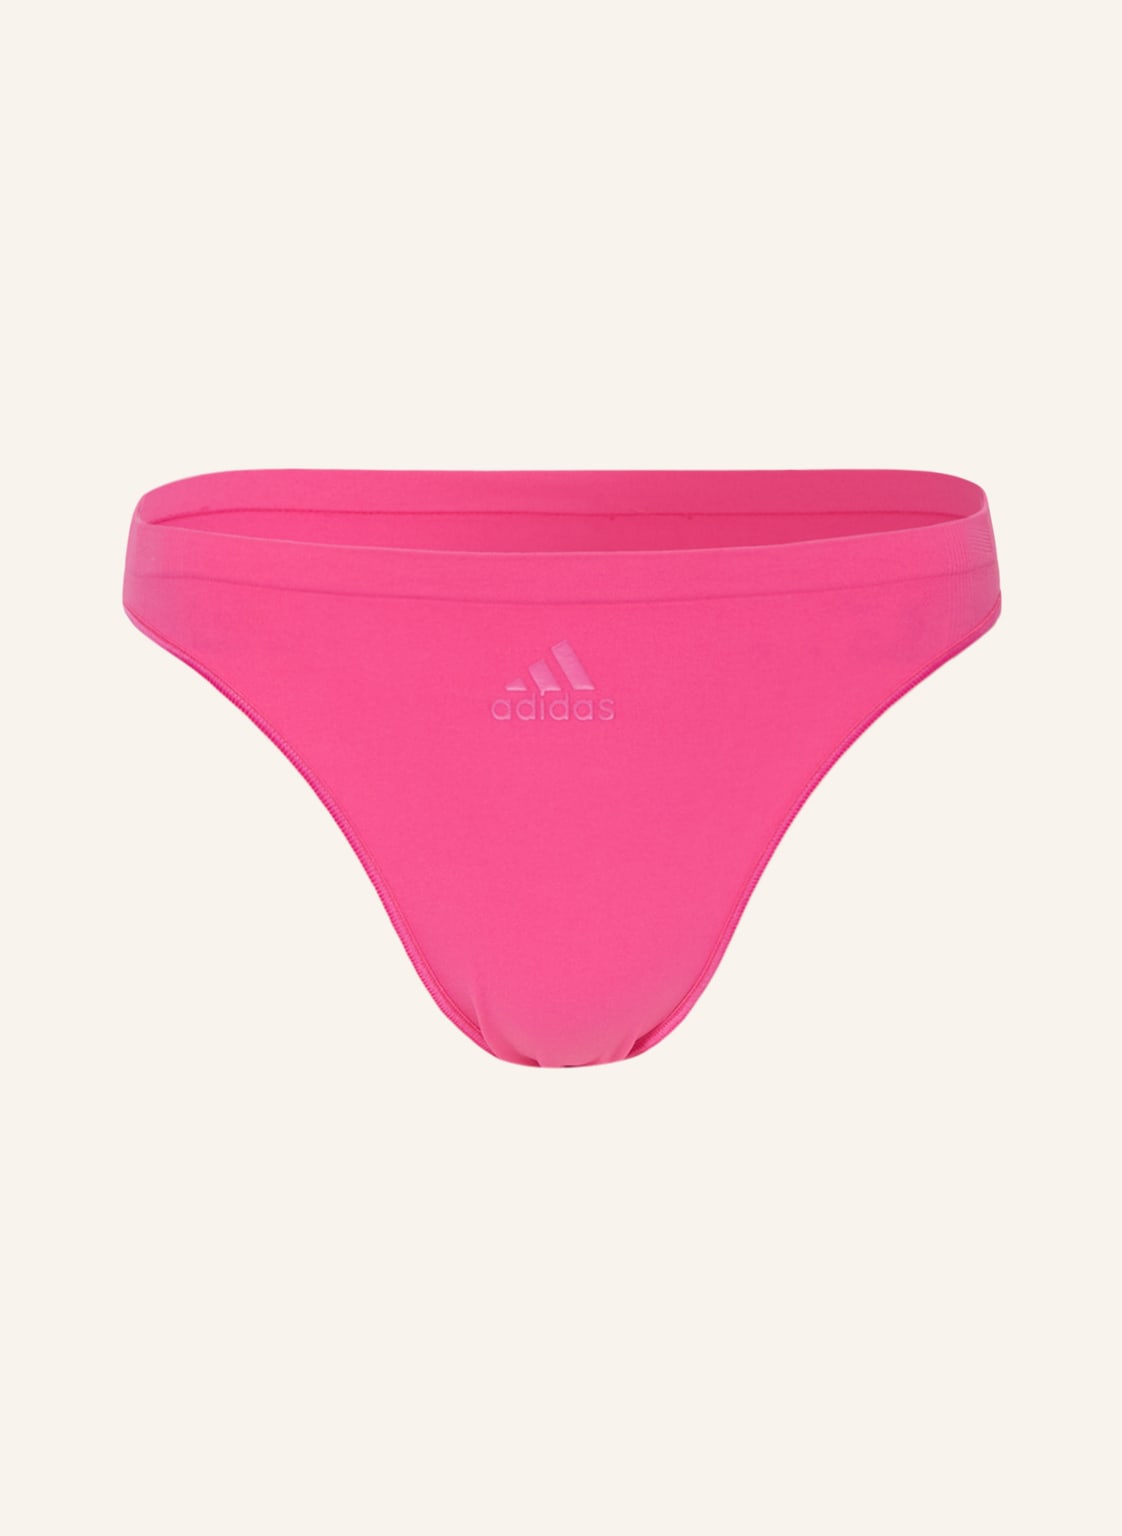 Image of Adidas Slip pink